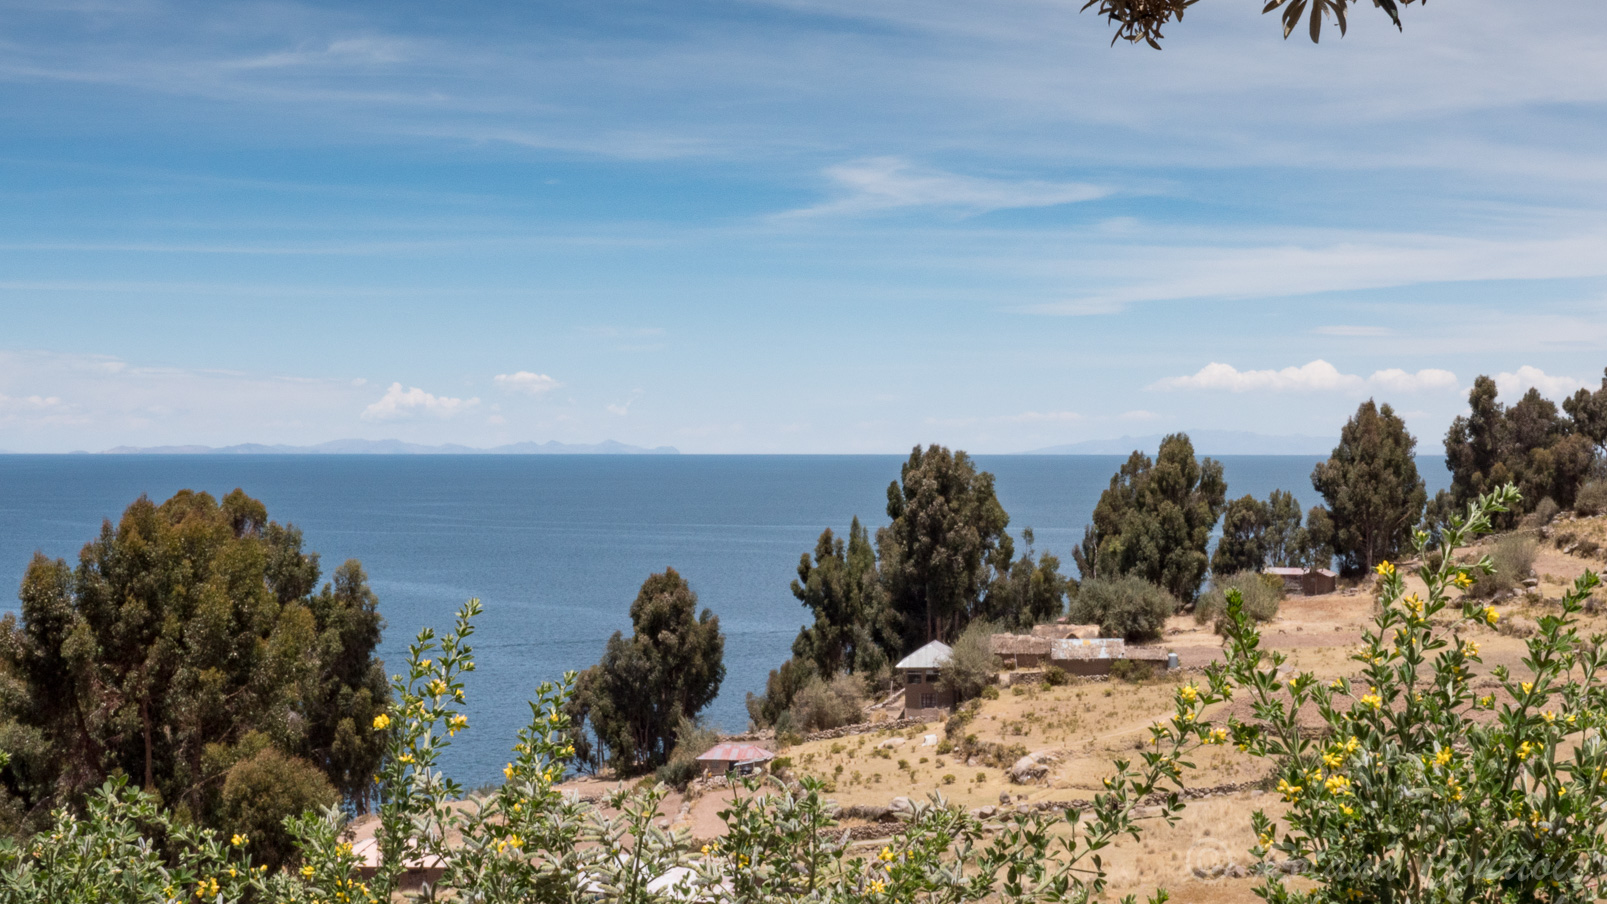 L'île de Taquile offre à tout moment de sublimes panoramas sur le lac avec à l'horizon les montagnes de Bolivie.